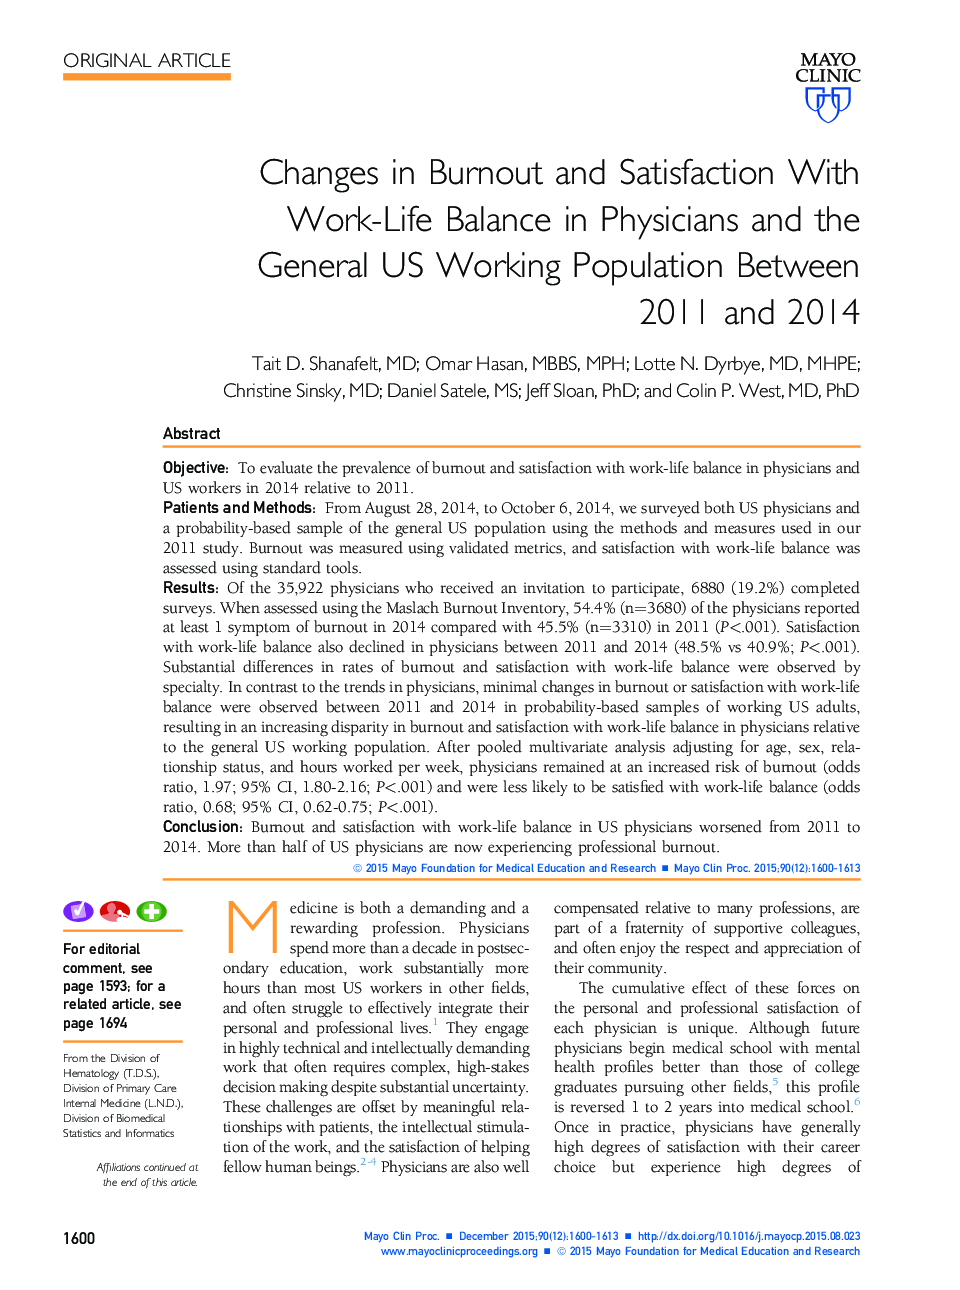 تغییرات فرسودگی و رضایتمندی با تعادل کار در پزشکان و جمعیت کارکنان عمومی آمریکا در سالهای 2011 تا 2014 